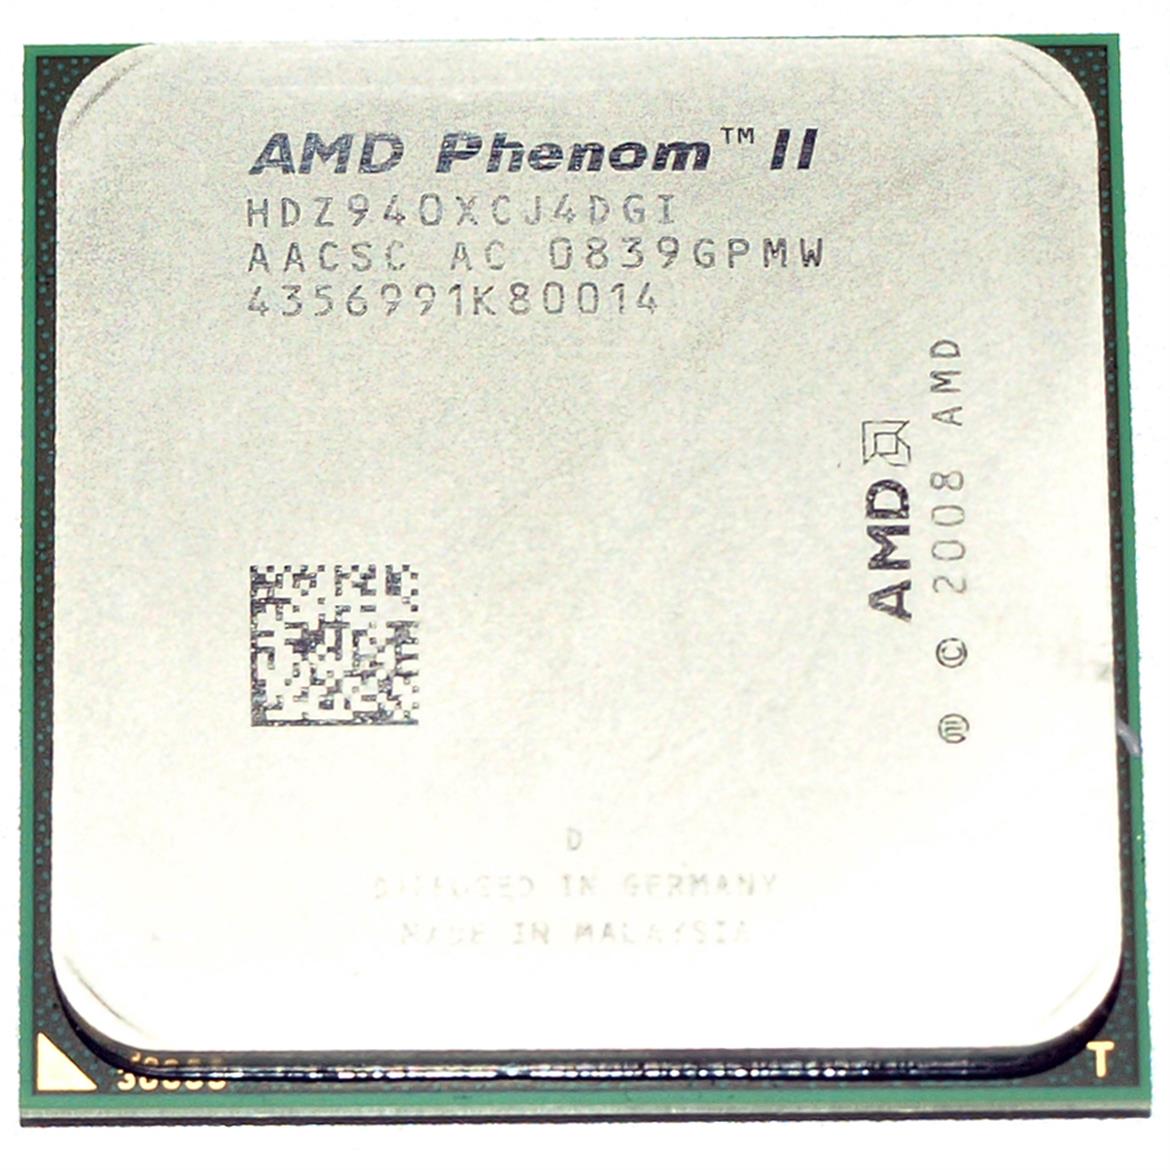 Enter The Dragon: AMD Phenom II X4 940